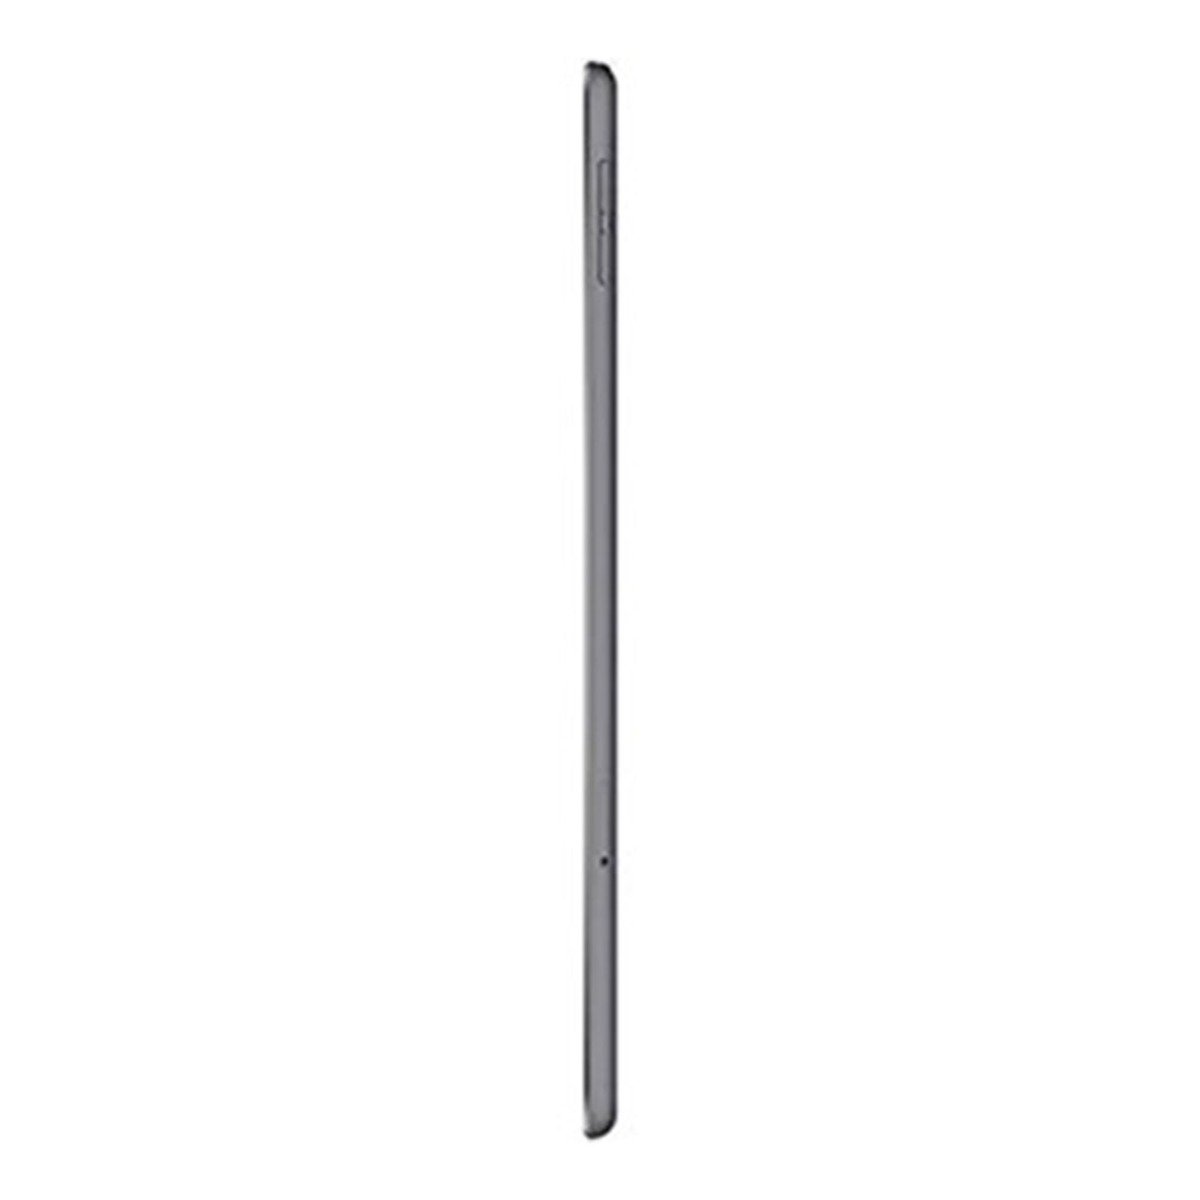 Apple iPad Mini (Wi-Fi + Cellular, 64GB) Space Gray